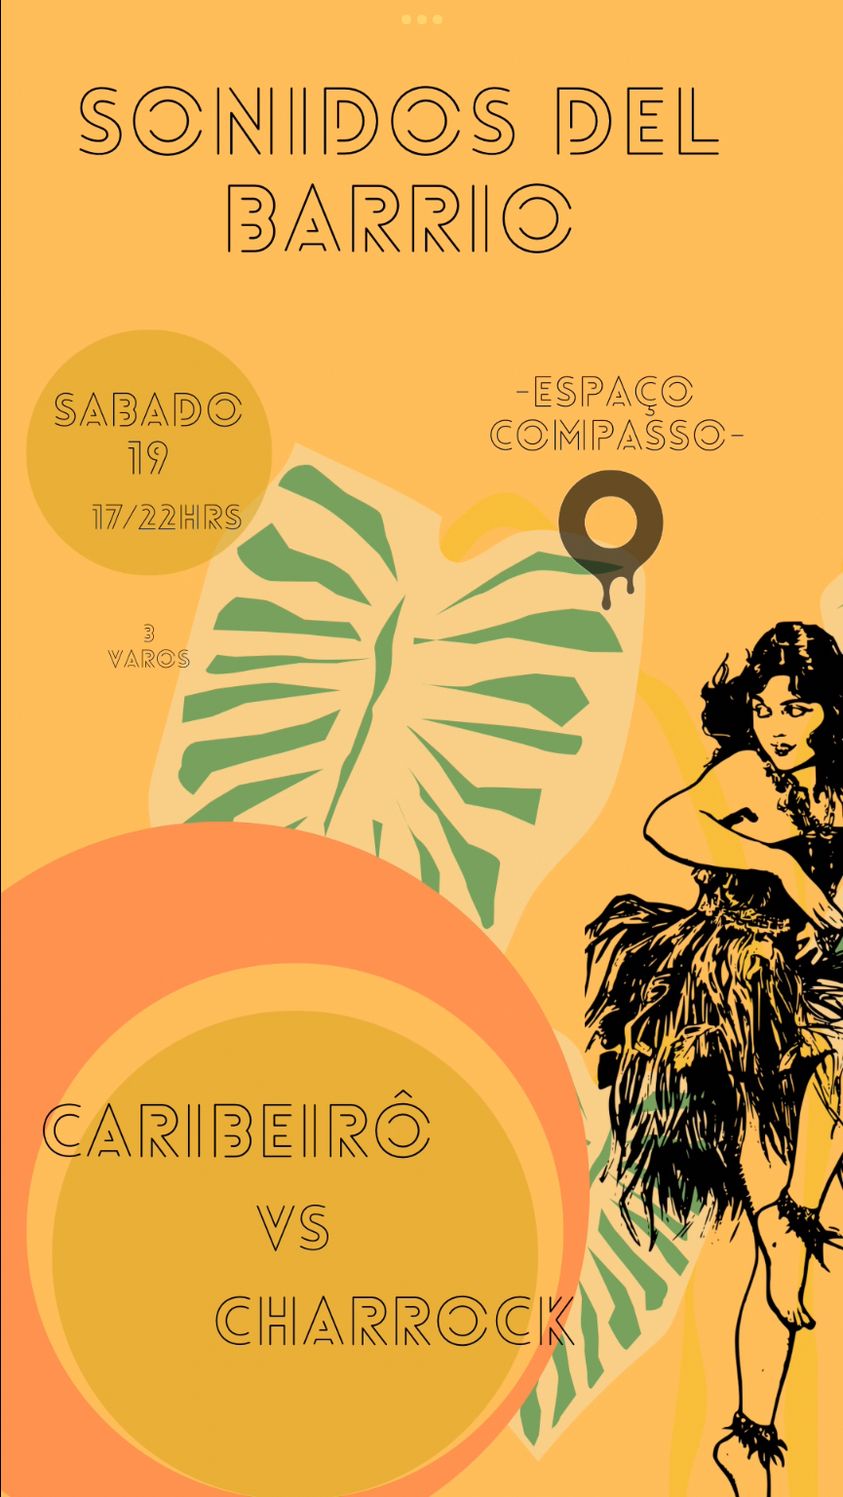 SONIDOS DEL BARRIO 💃 CHARRO.CK & CARIBEIRÔ - Espaço Compasso